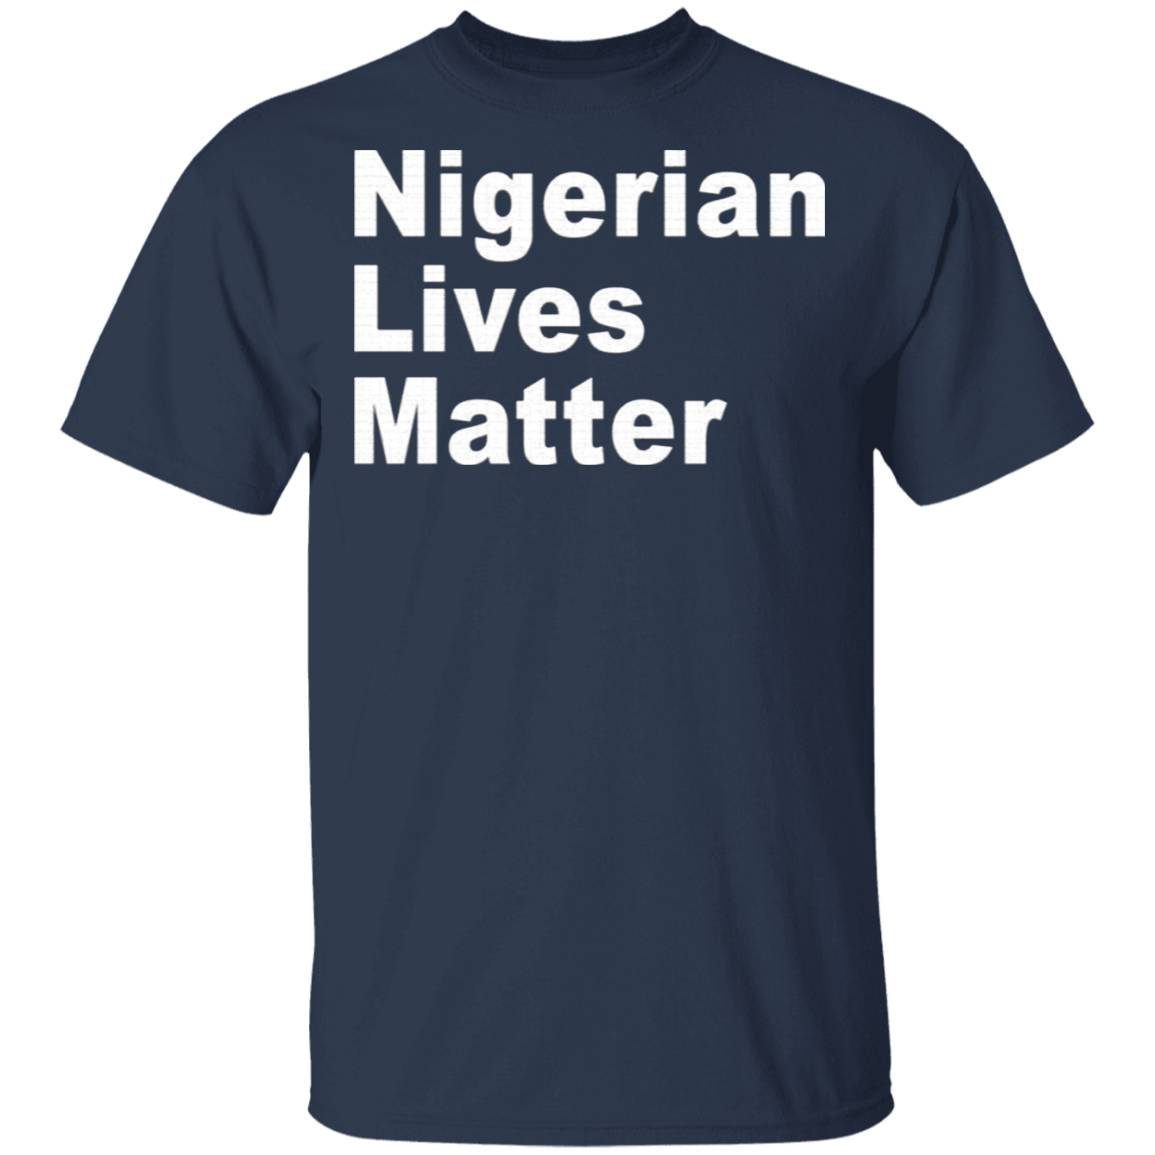 Nigerian Lives Matter shirt 1